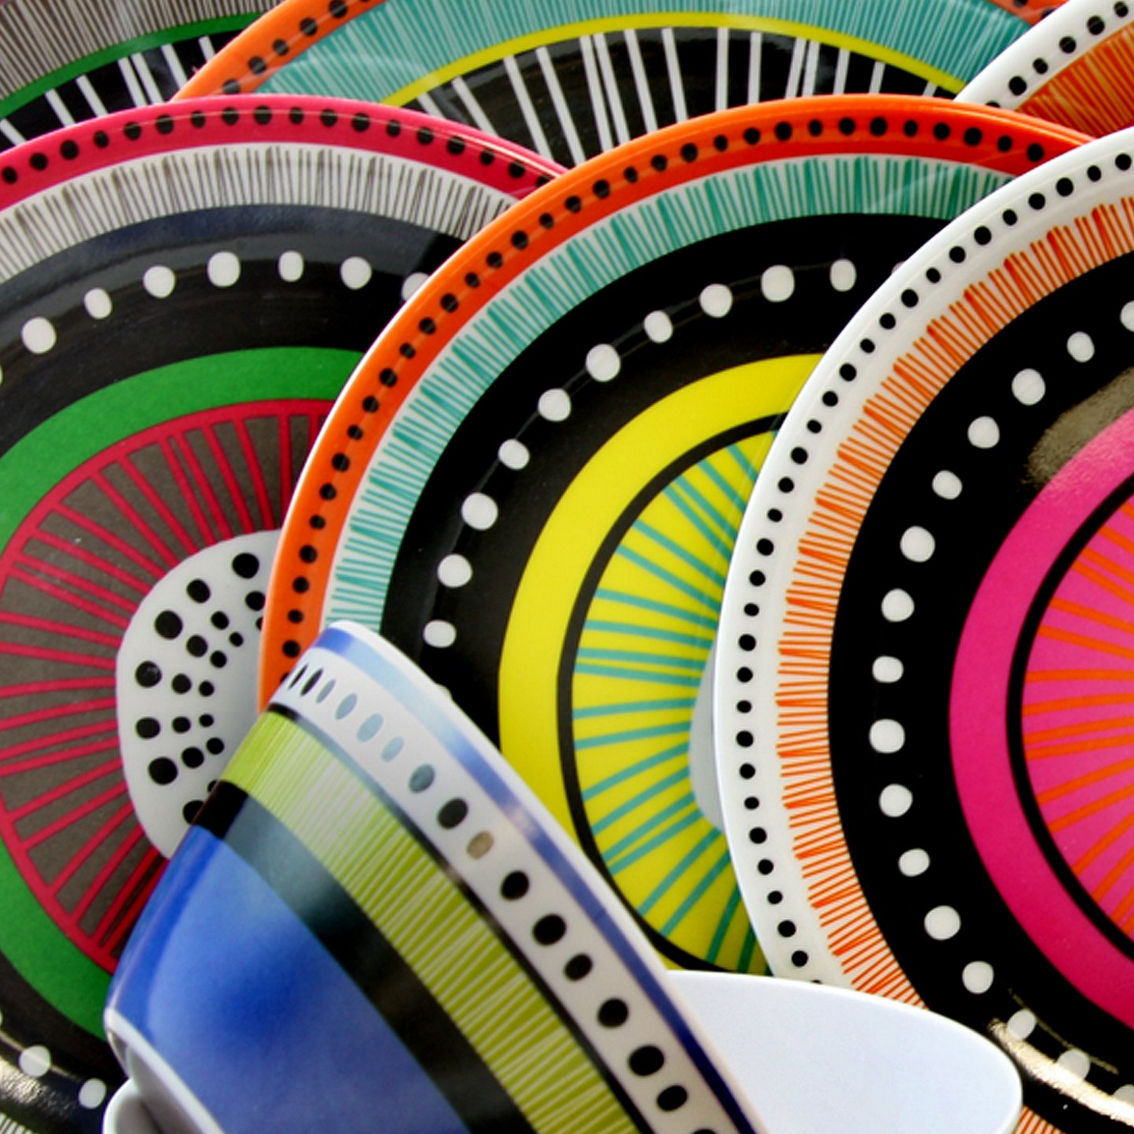 Gibson Almira 12-Piece Dinnerware Set in 4 Assorted Colors - Image 3 of 5